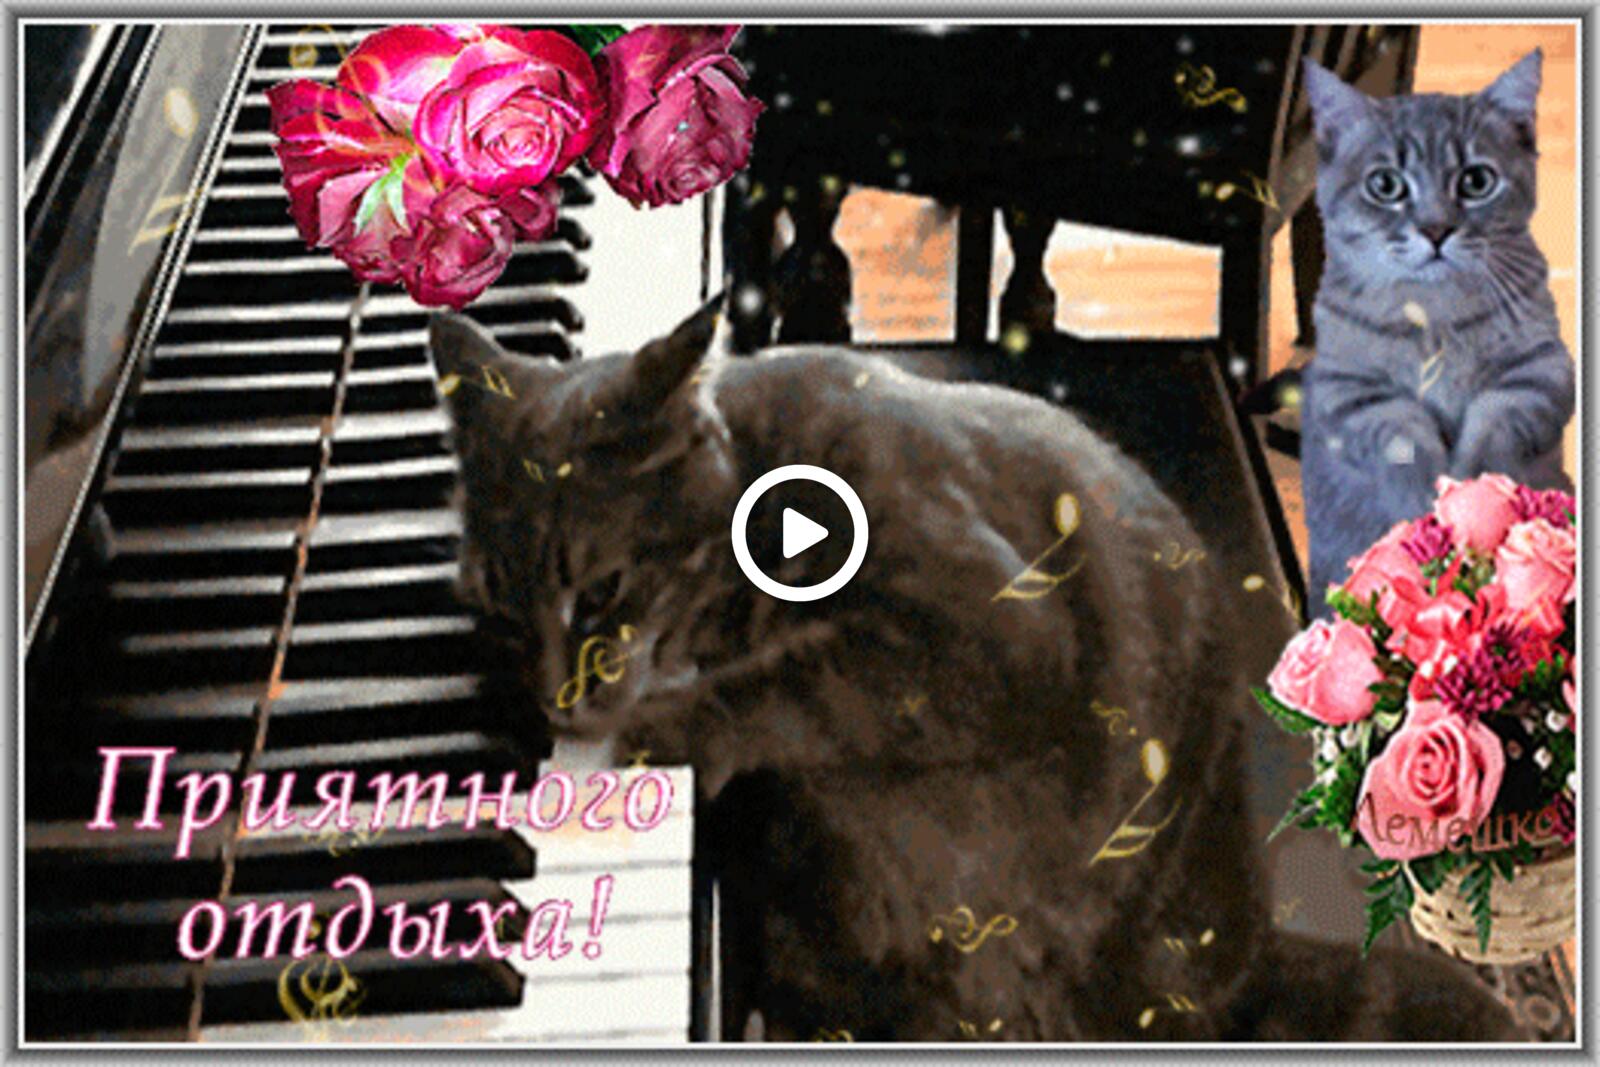 一张以钢琴 玫瑰 3d 文本为主题的明信片